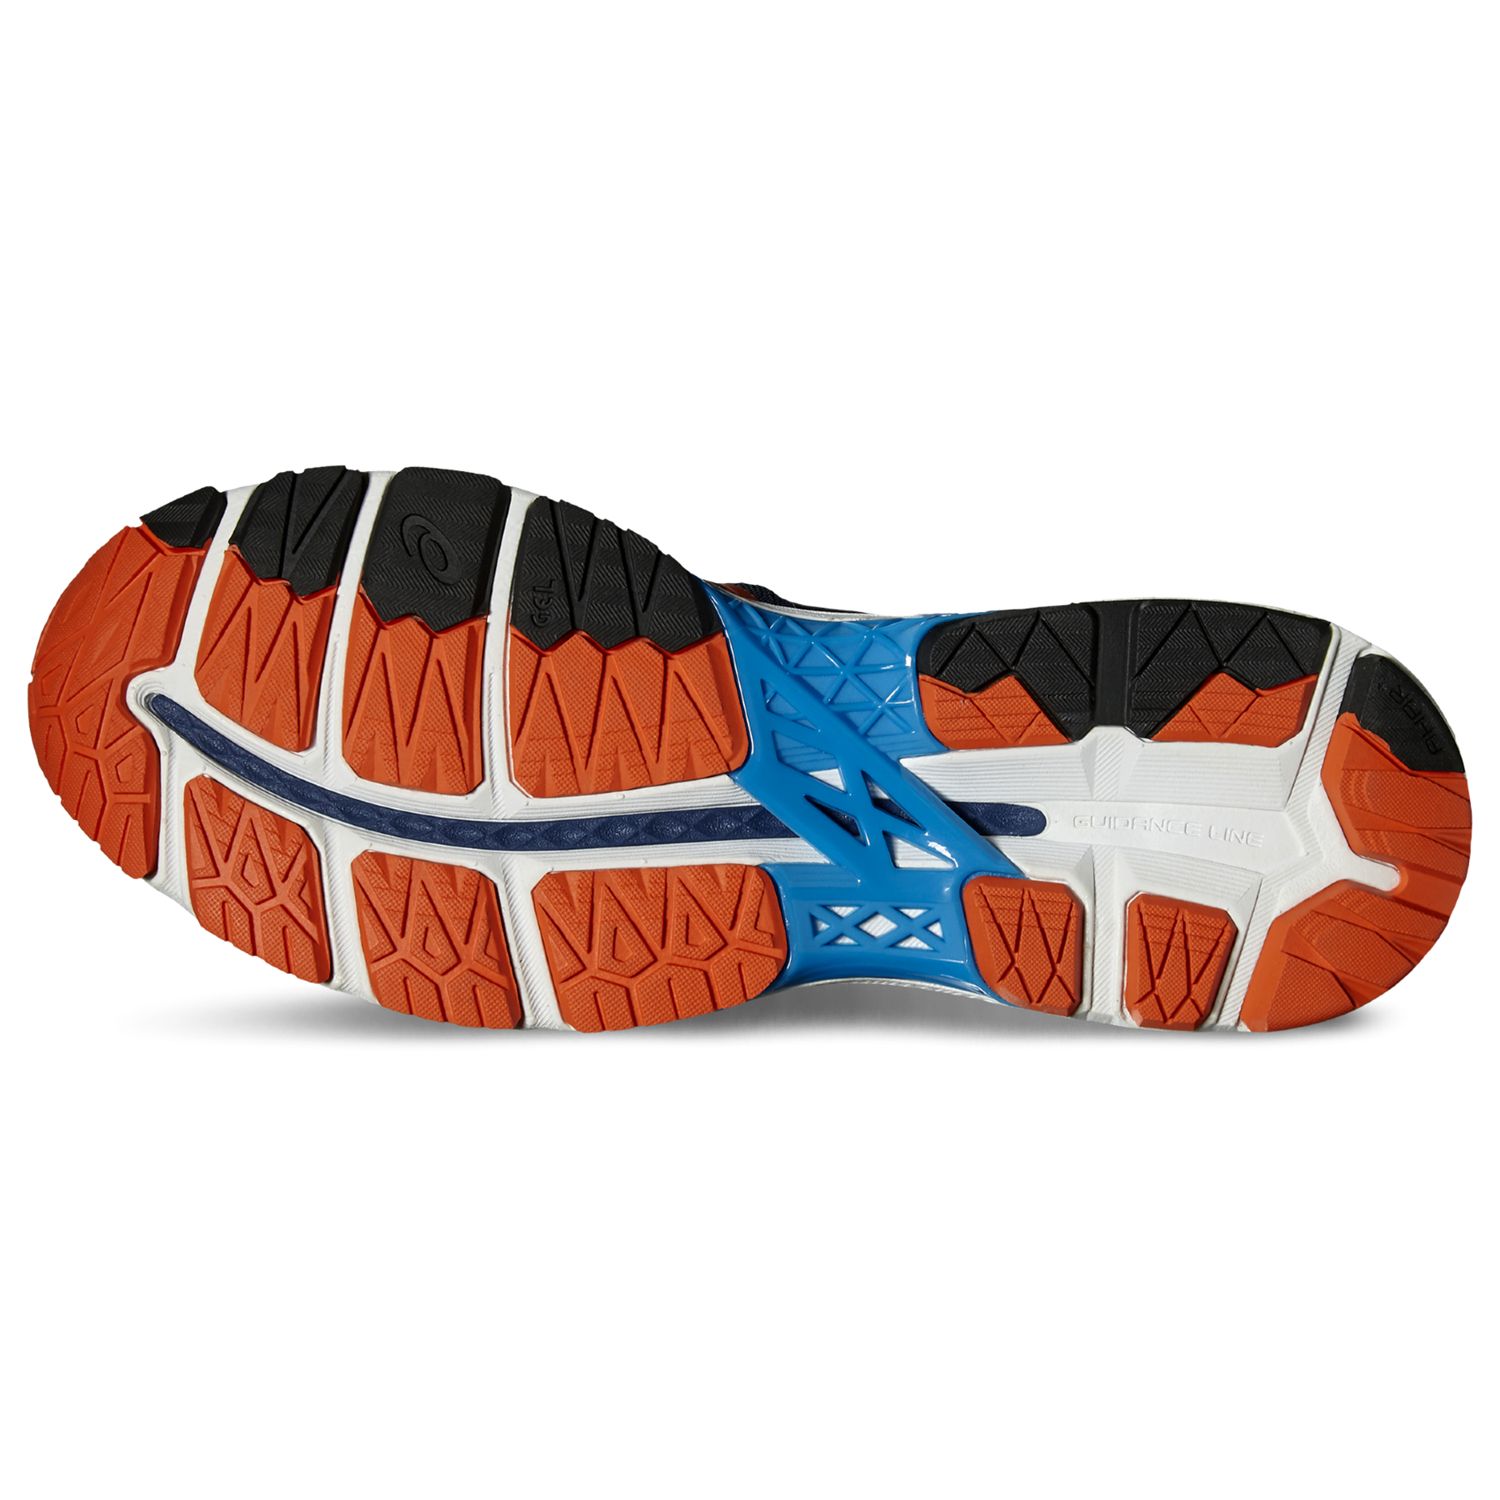 Asics Gel Kayano 23 Men S Structured Running Shoes Blue Orange At John Lewis Partners